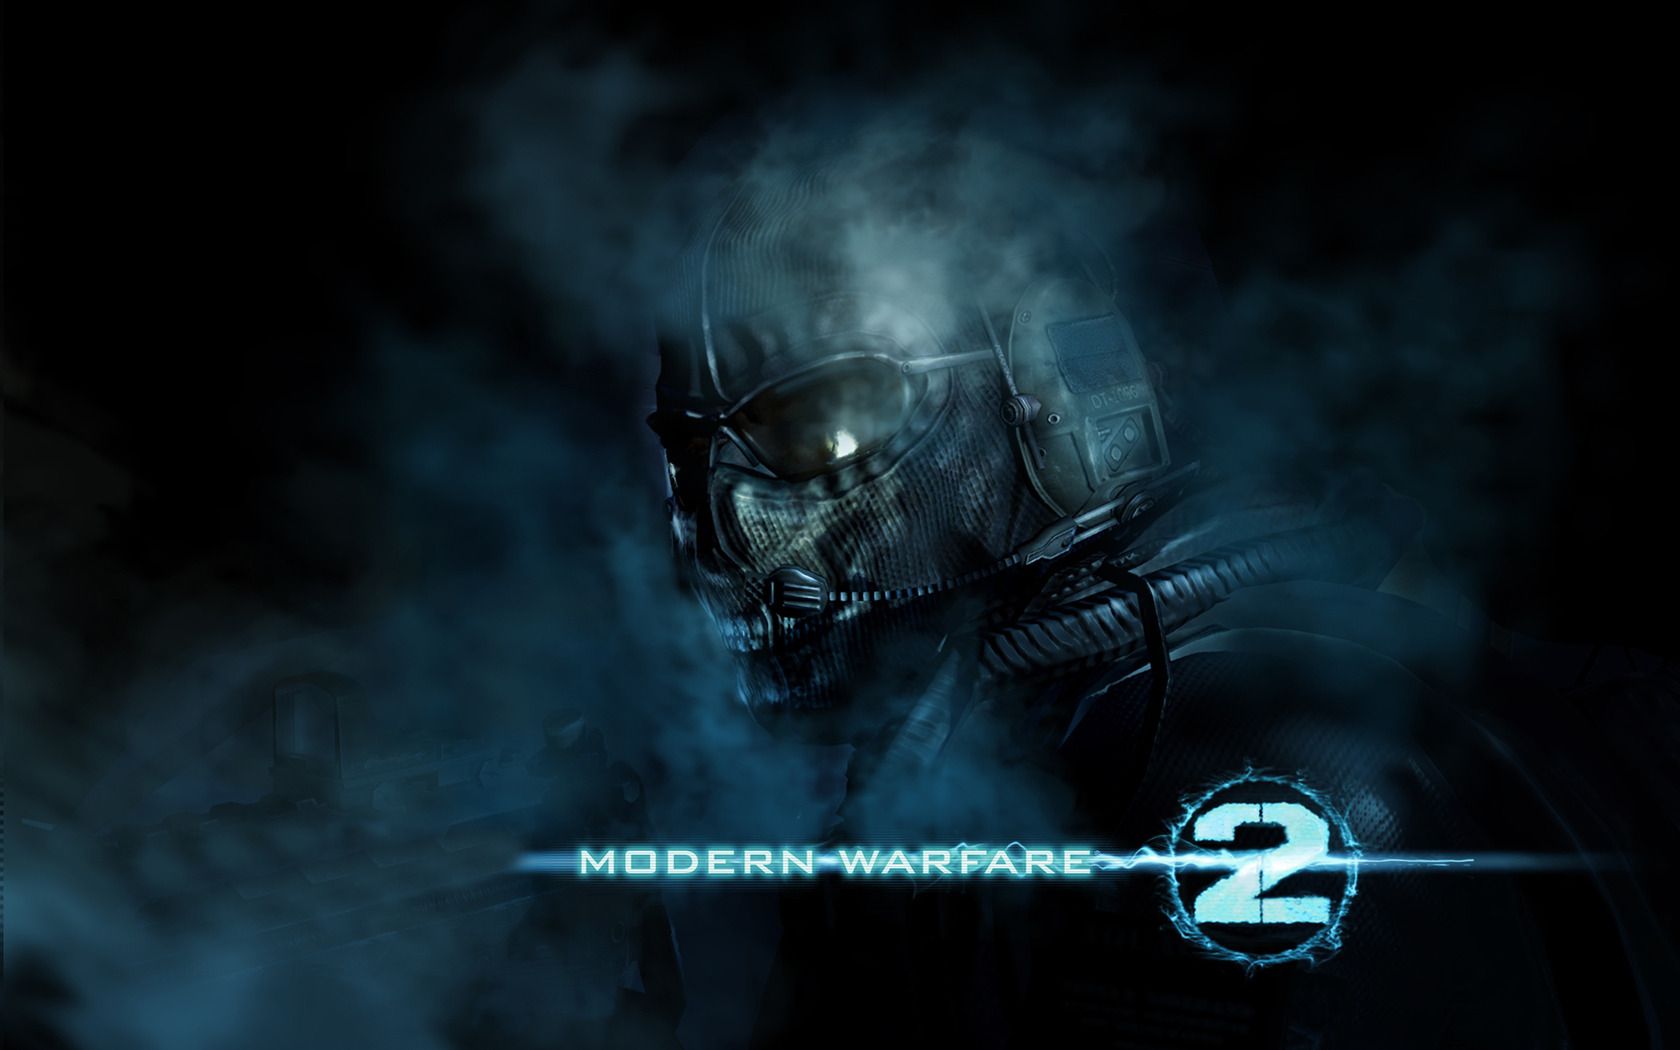 Download Call Of Duty Modern Warfare 2 Wallpaper. Wide Screen Wallpaper 1080p, 2K, 4K